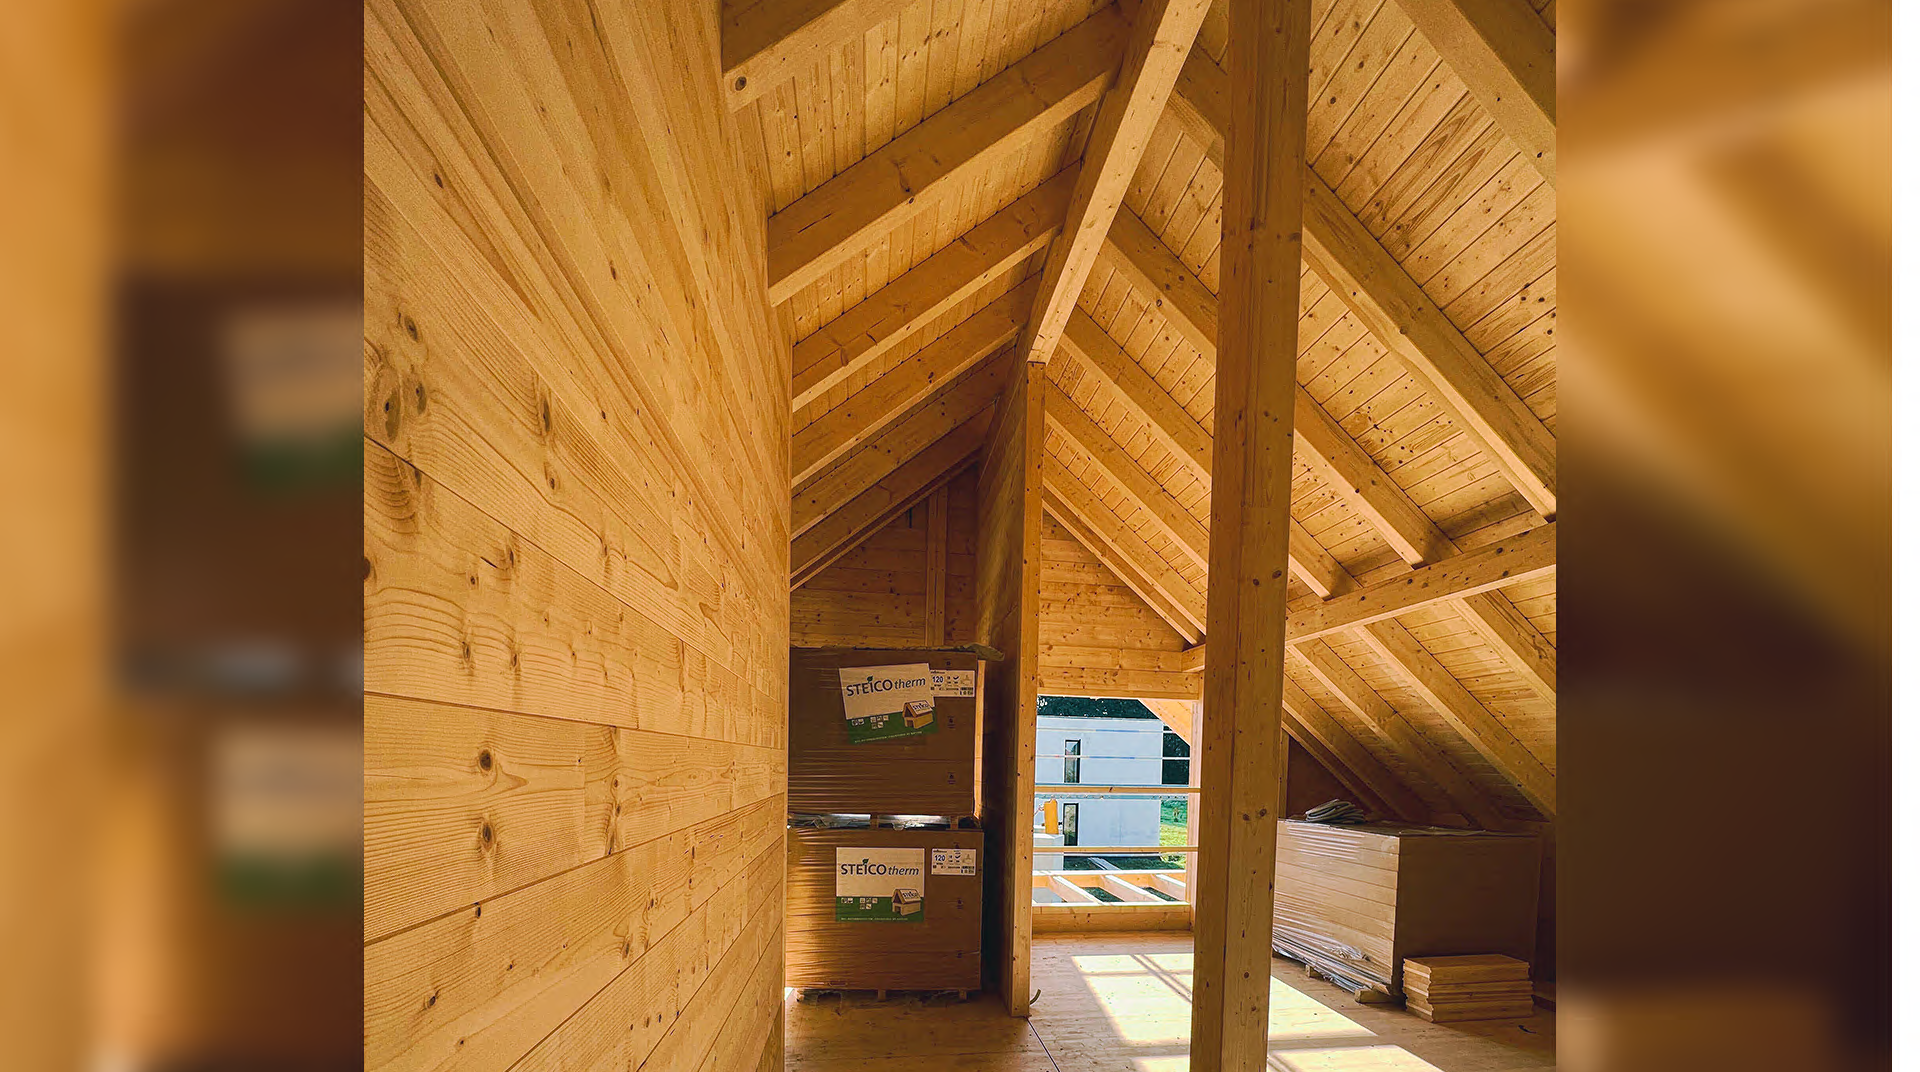 Holzdachboden eines MaWood Hauses mit Balken, Fenster und Kartons 